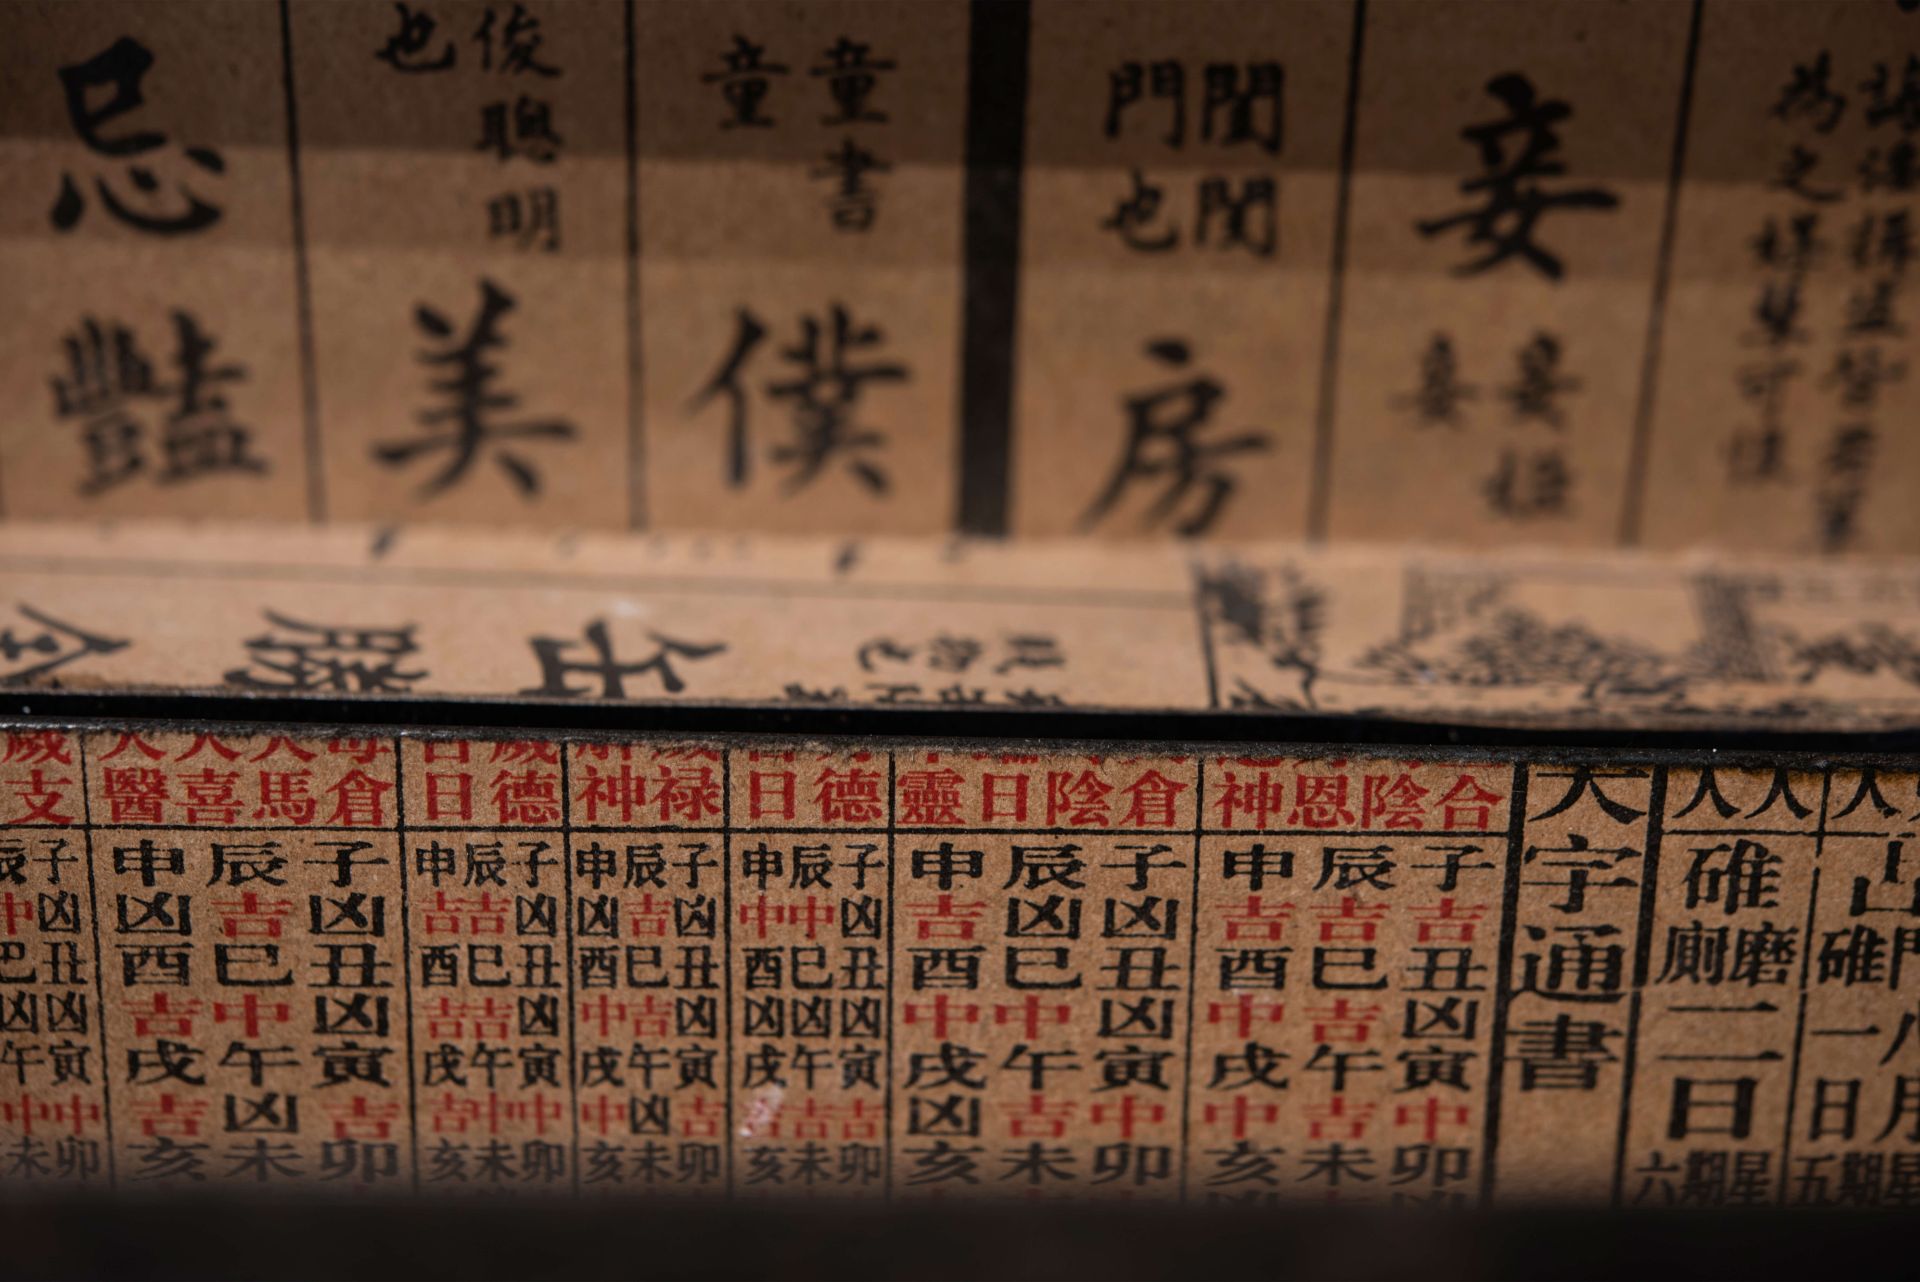 Chinesische Schatulle | Chinese casket - Bild 4 aus 5